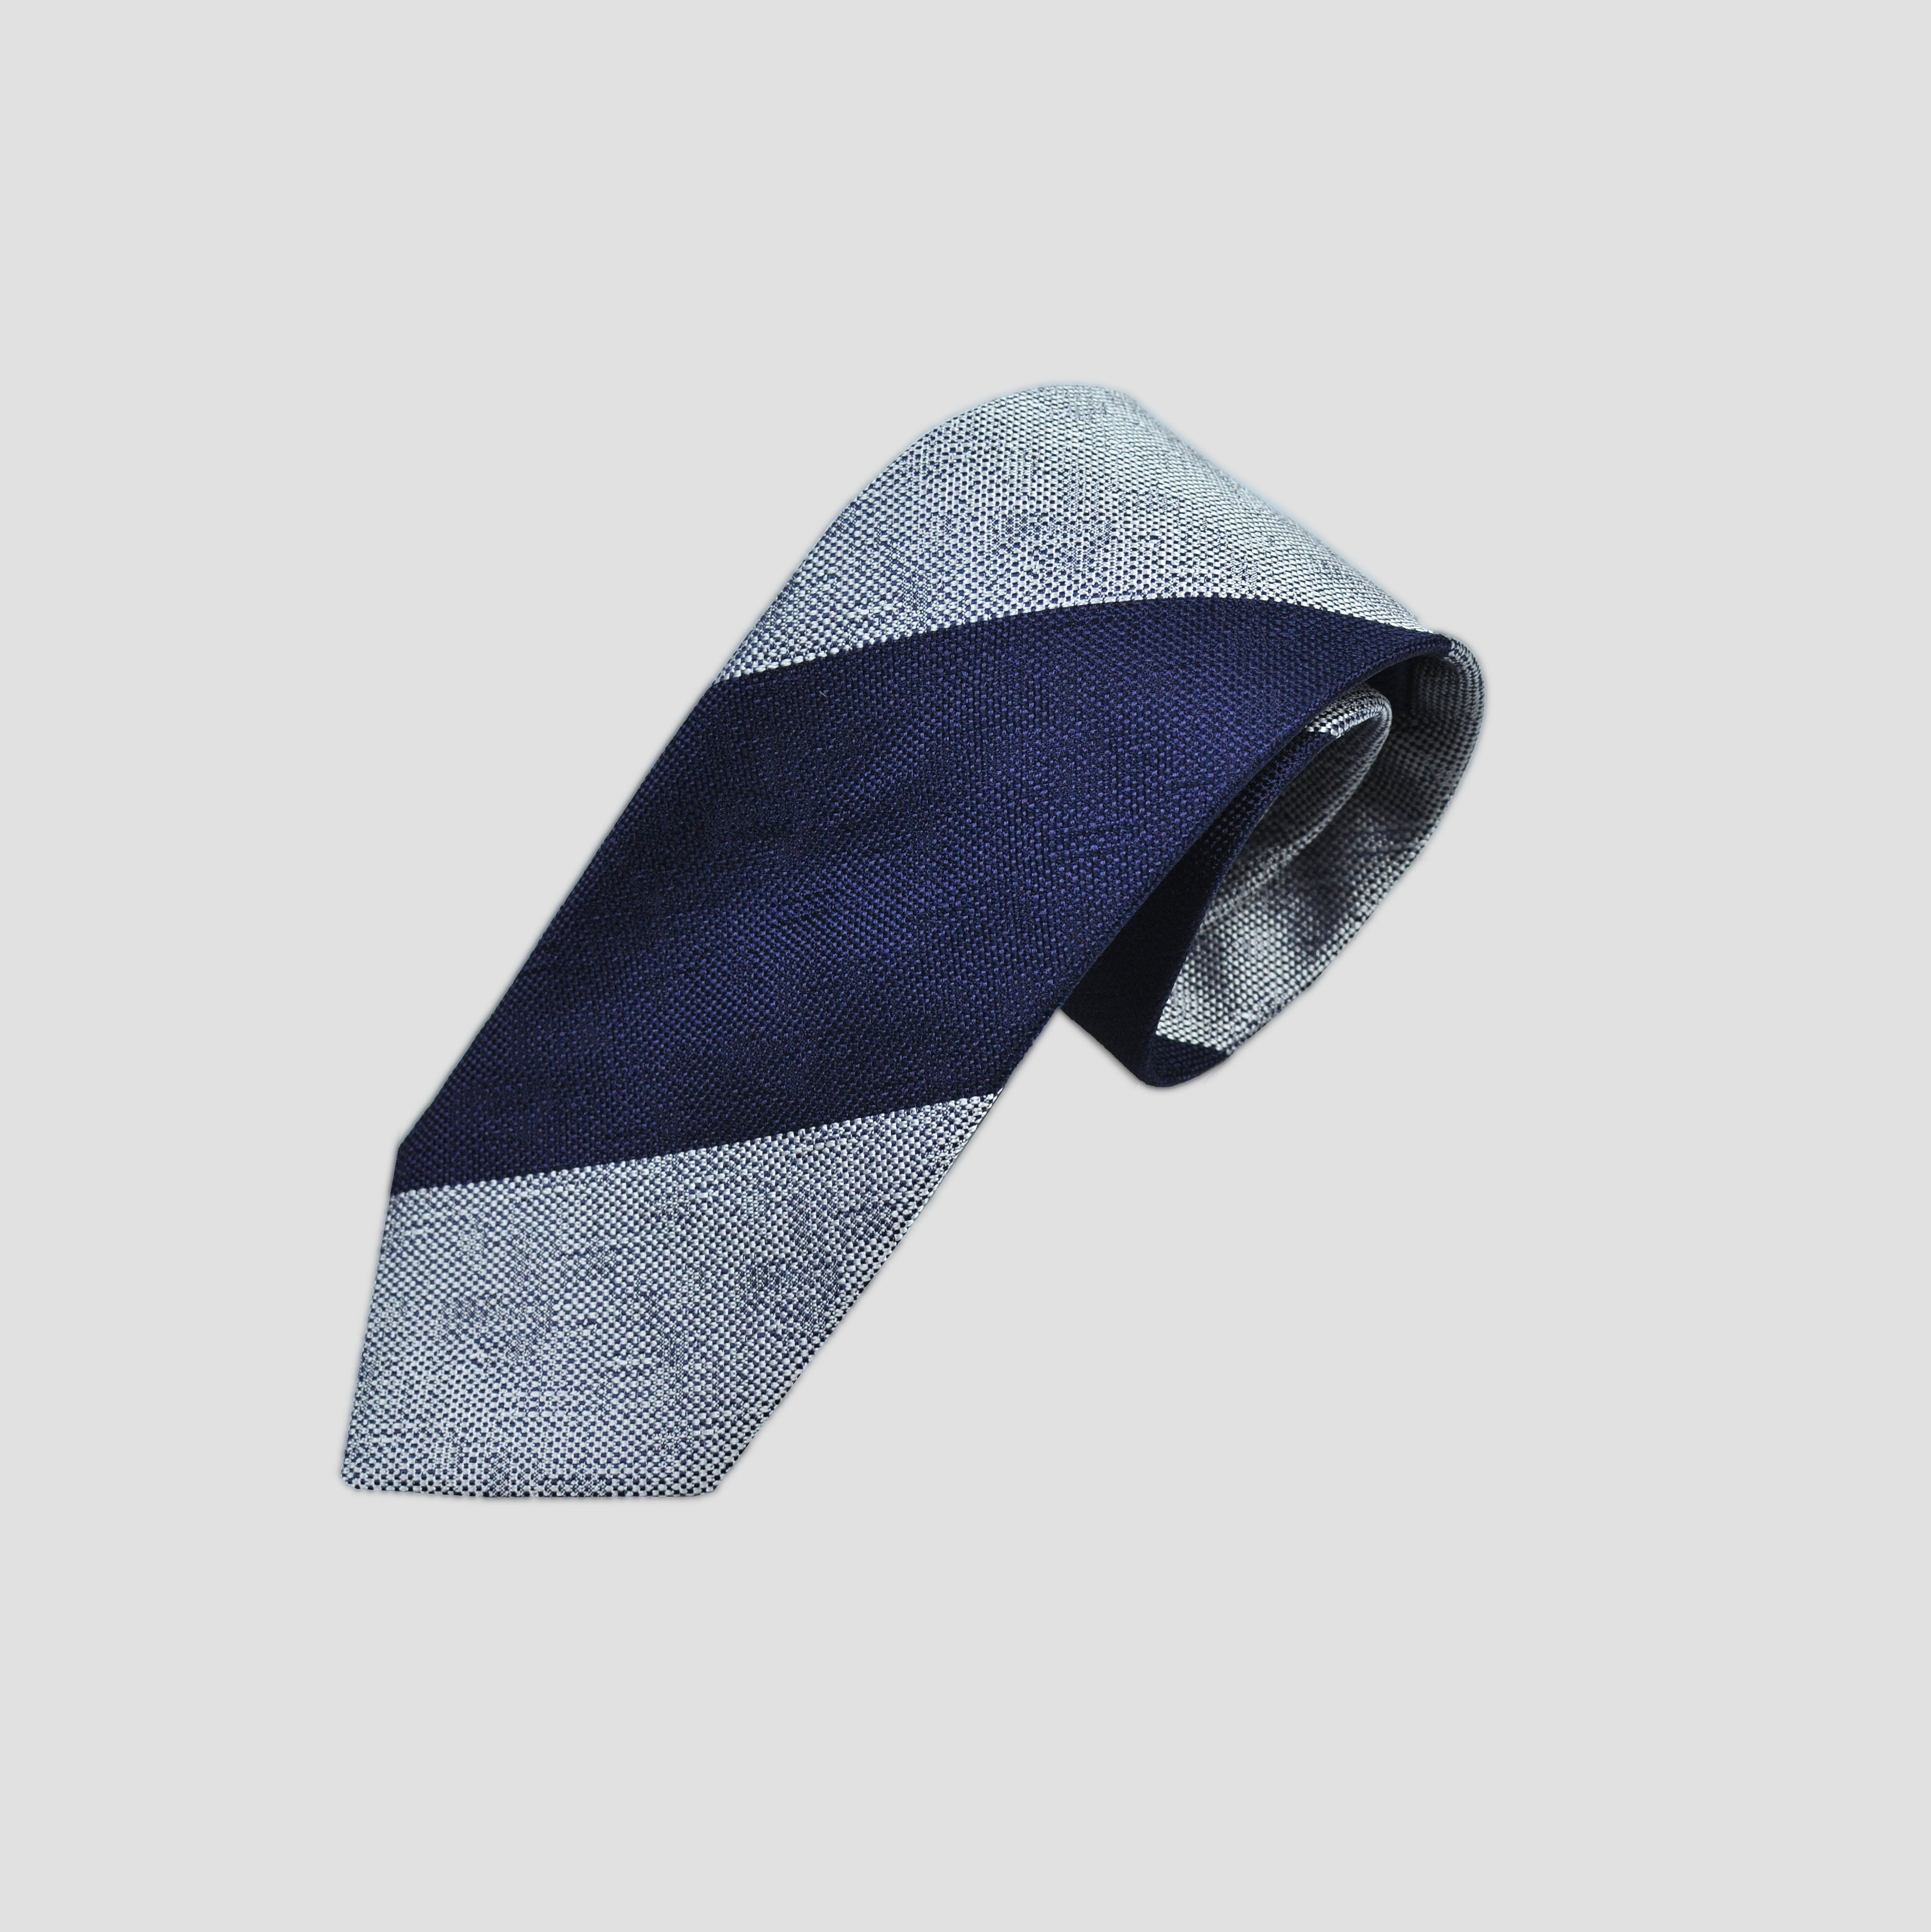 Bold Stripes Bottle Neck Silk Tie in Navy & Grey